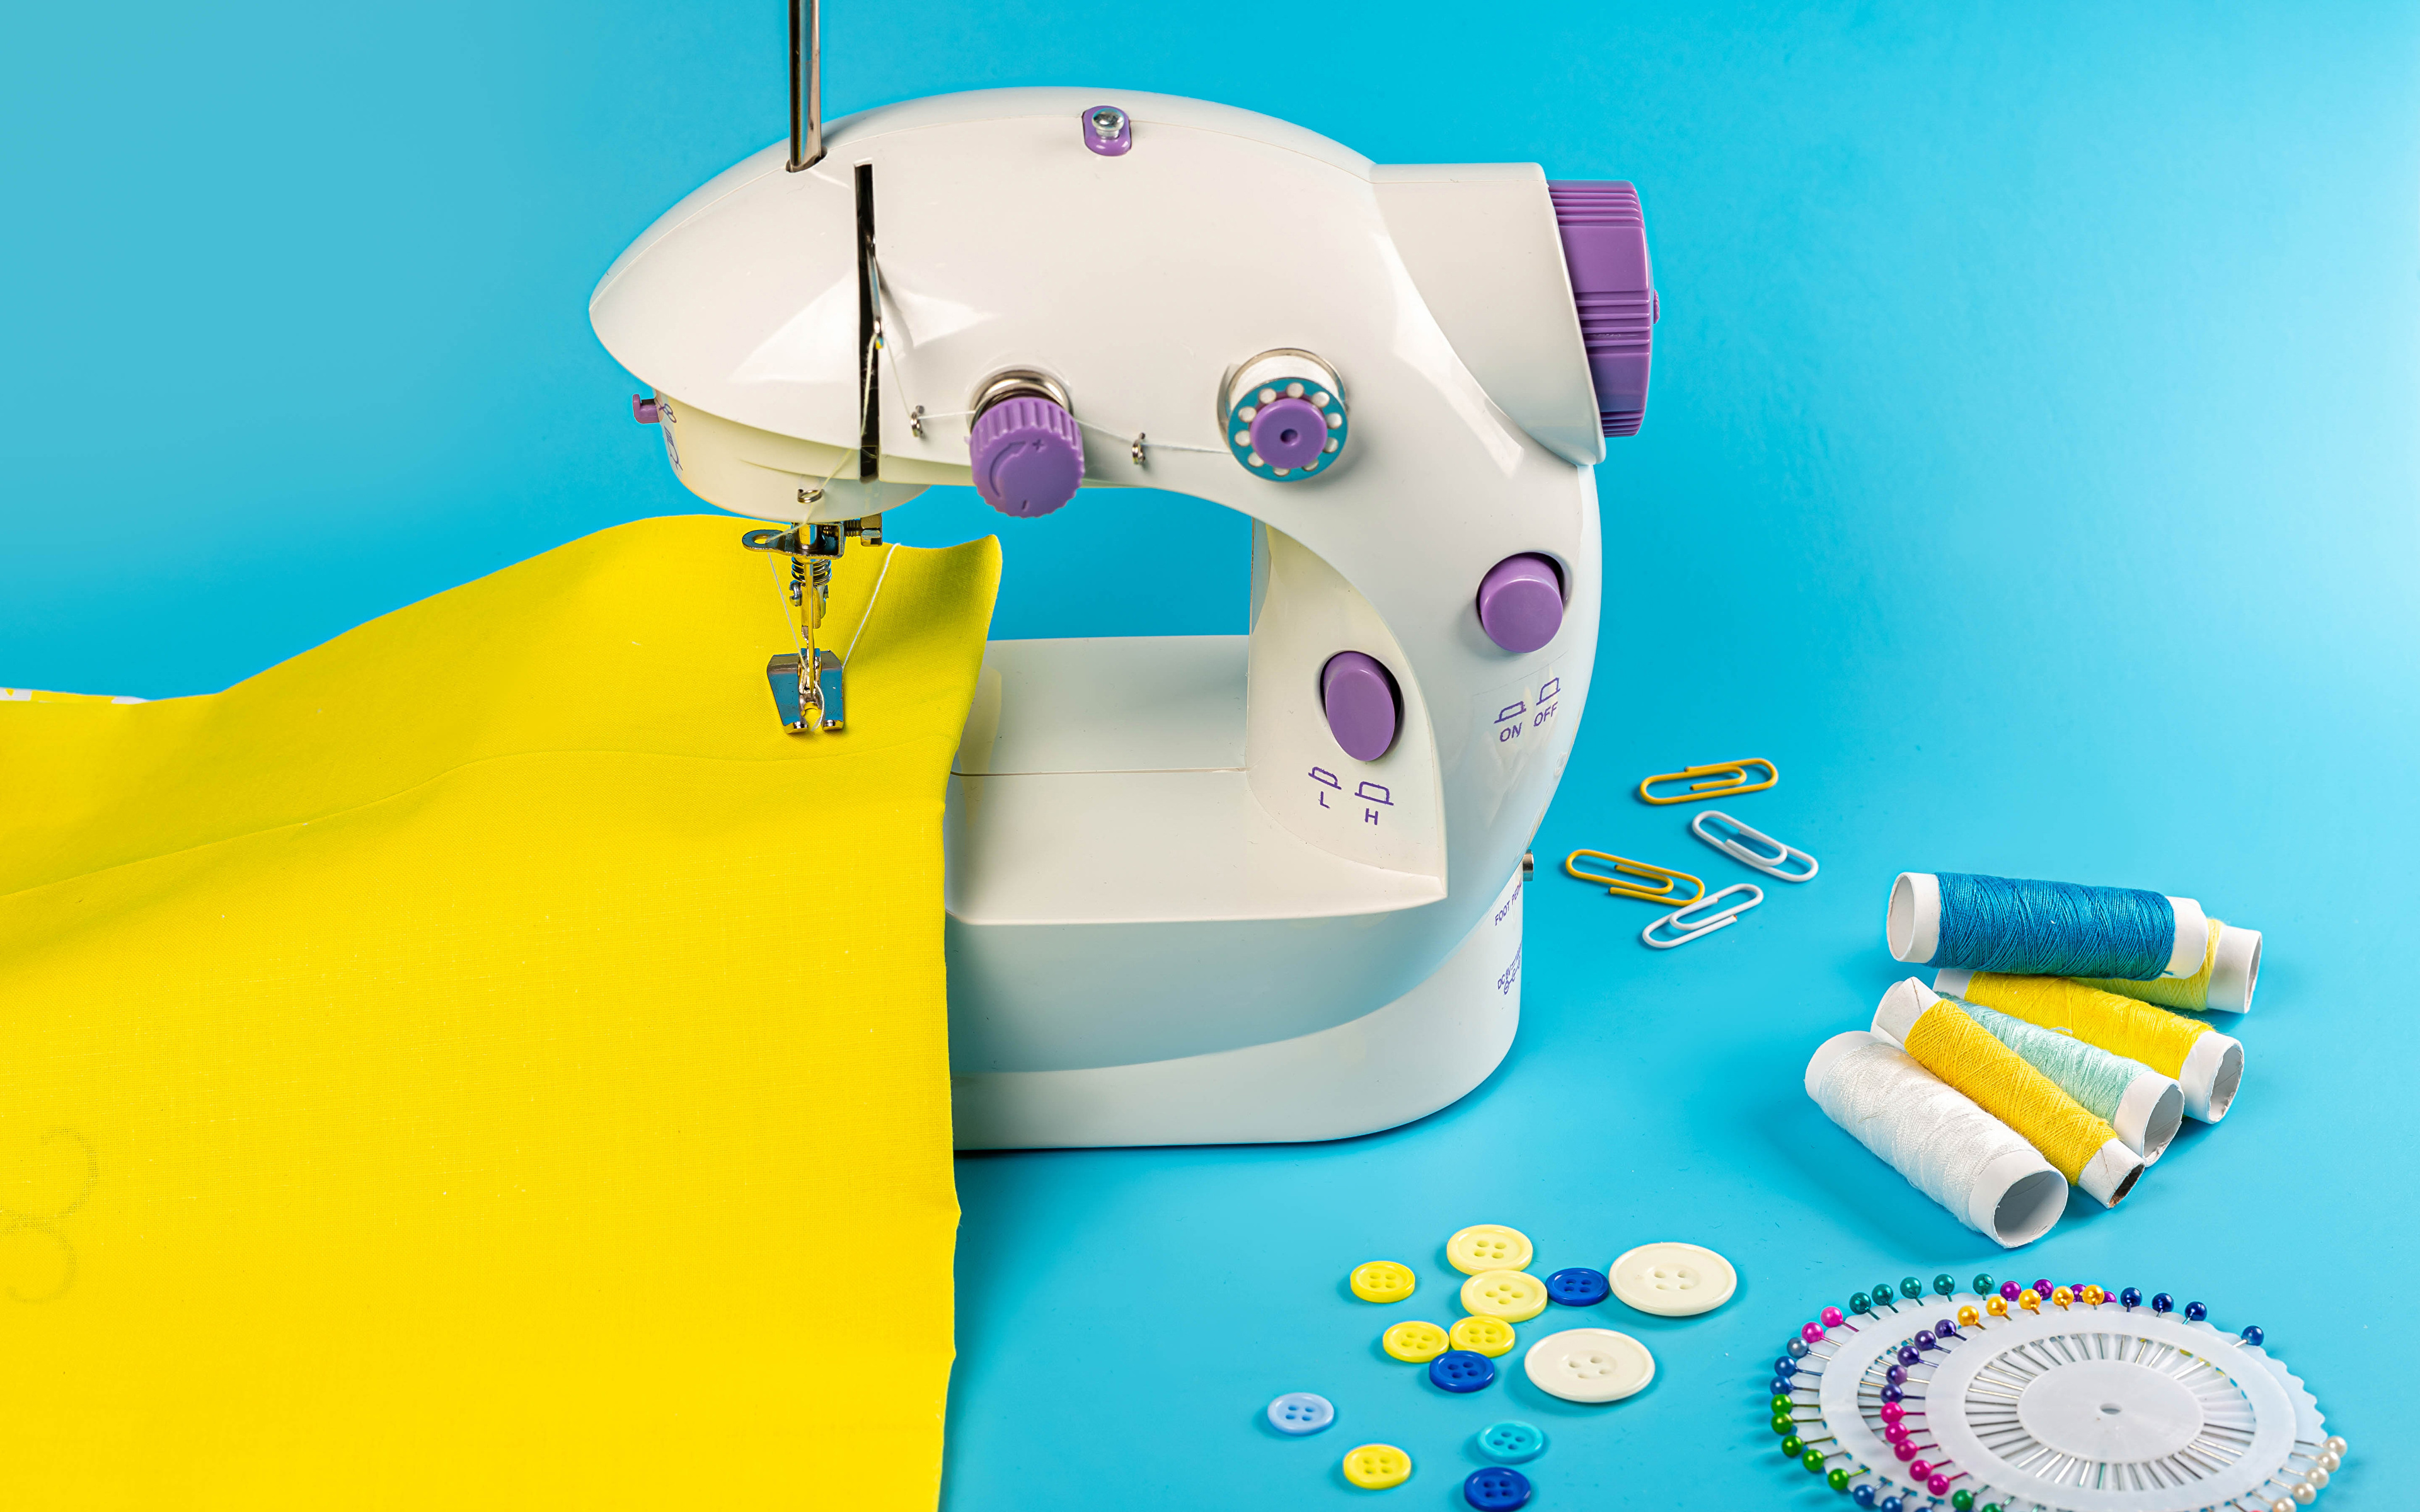 Fotos von Webstoff Nähgarn Sewing machine Farbigen hintergrund 3840x2400 Gewebe Stoff